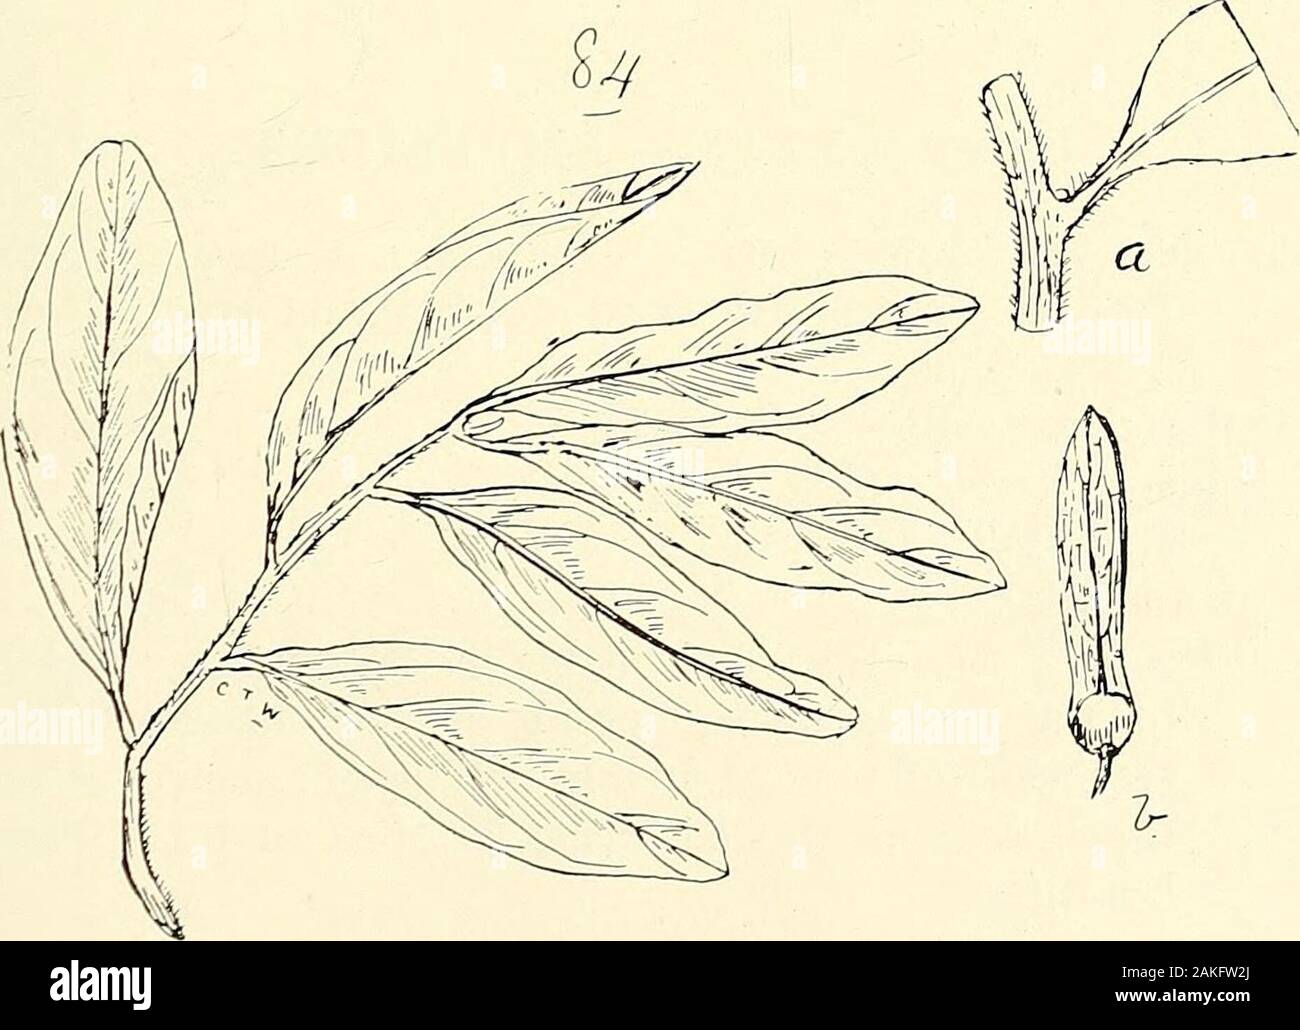 Umfassenden Katalog von Queensland Pflanzen, Einheimische und naturalizedTo, die hinzugefügt sind, soweit bekannt, die Aborigines und anderen volkstümlichen Namen; mit zahlreichen Abbildungen und reichlich Notizen auf die Eigenschaften, Funktionen, &c., der Pflanzen. .&Gt; 7/i/Ney (Fin) 83. Macgregoria racemigera, F. v. M.. 84. Ventilago ecorollata, F. v. M. (a) Teil eines branchlet Enl., (b) die Mutter mit ihrem Anhängsel (winj 106 XXXIX. AMPELIDEjE. Emmenospermum, F. v. M. alphitonioides, F. v. M.-Jingull von Cairns Eingeborenen. Cunninghamii, Benth. Pomaderris, Labor krank. elliptica, Labill. Lanigera, Sims. Spectabilis, Sie Stockfoto